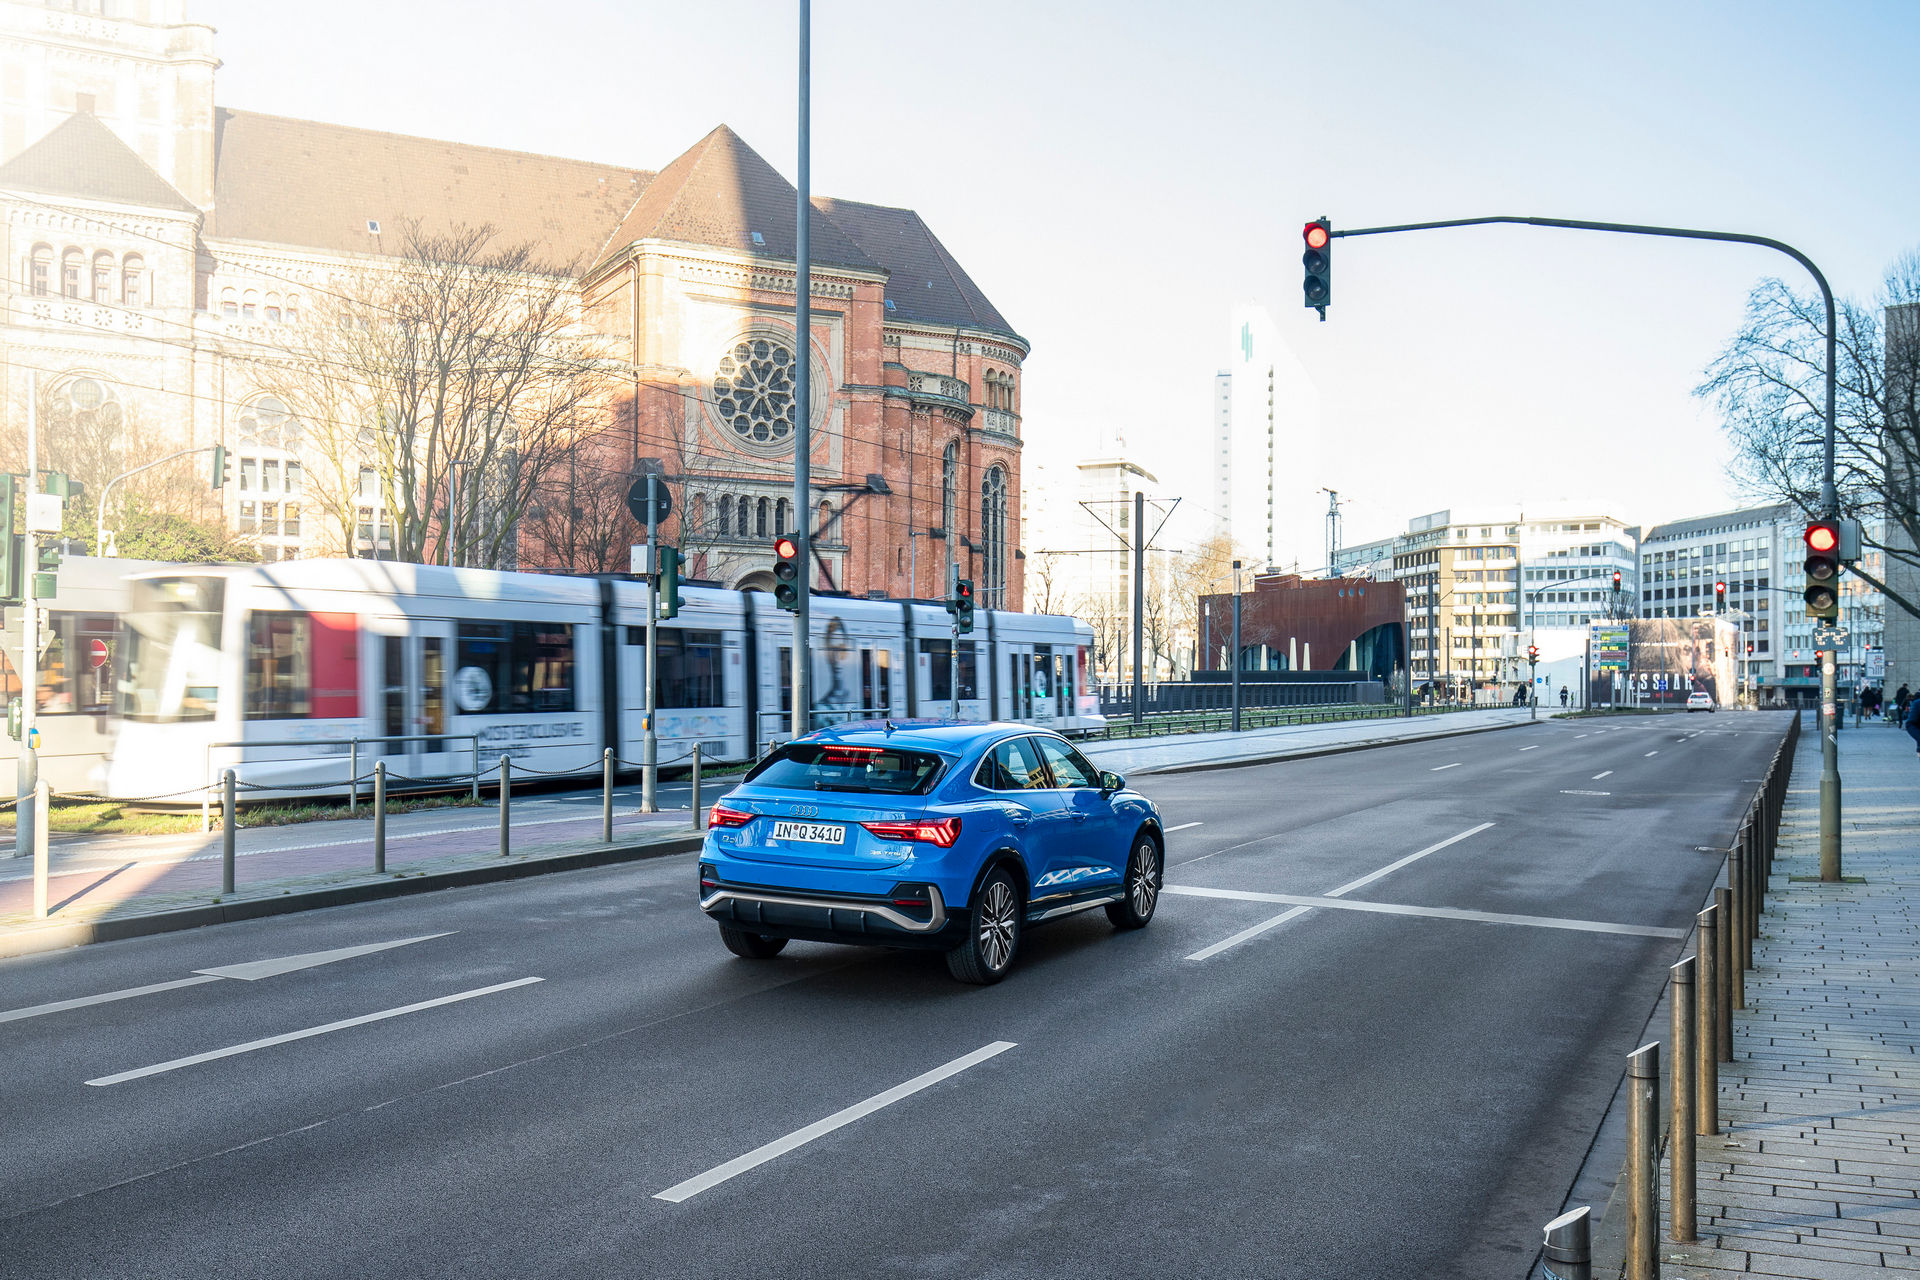 سيارات اودي تبدأ بالتواصل مع إشارات المرور في ألمانيا! 32